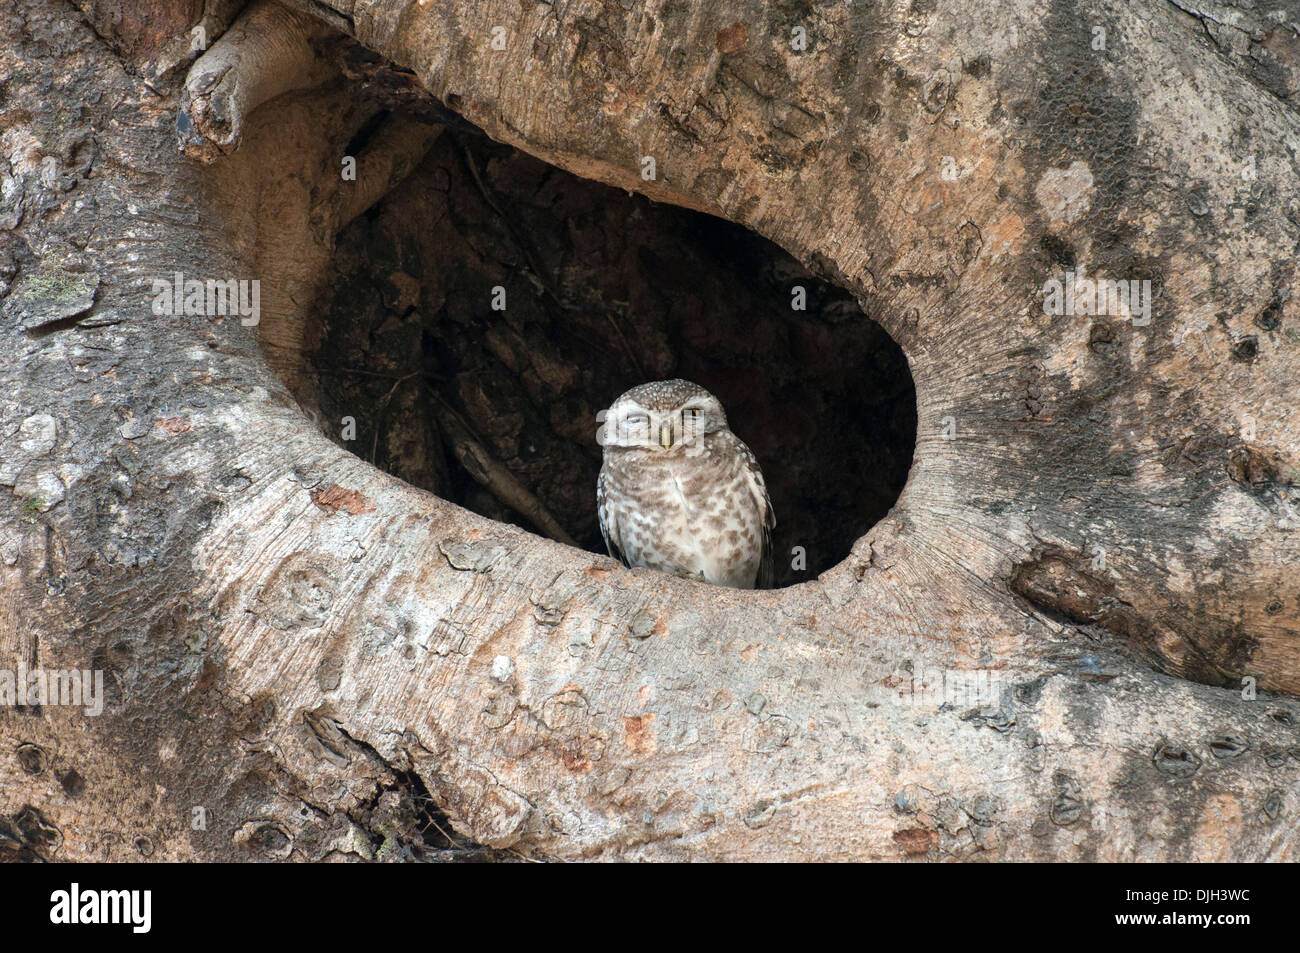 Spotted owlet sbirciando al di fuori del foro albero Parco Nazionale di Kanha Madhya Pradesh india Foto Stock